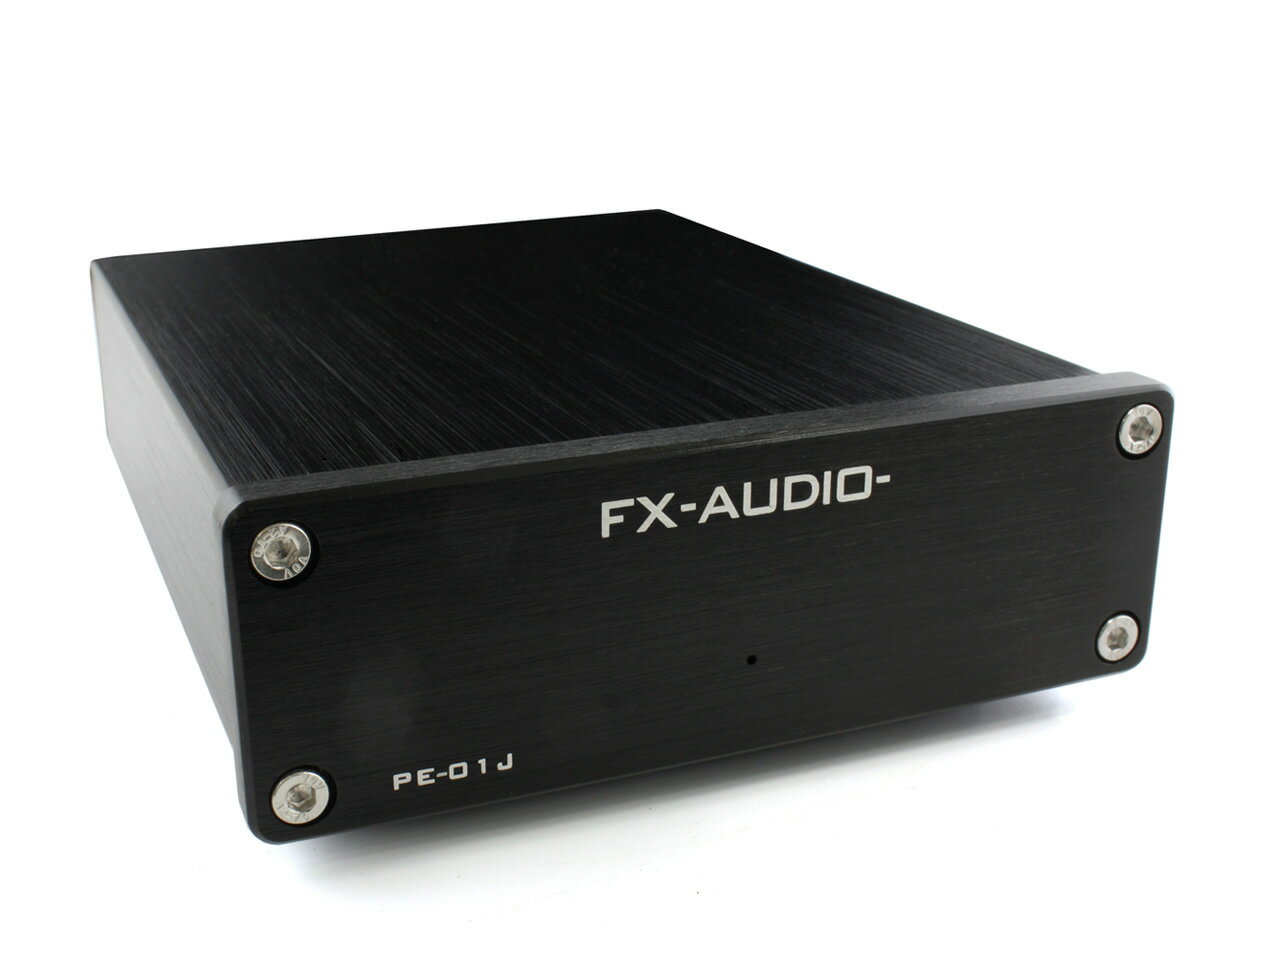 送料無料 FX-AUDIO- PE-01J ブラック MMカートリッジ対応 フォノイコライザー プリアンプ